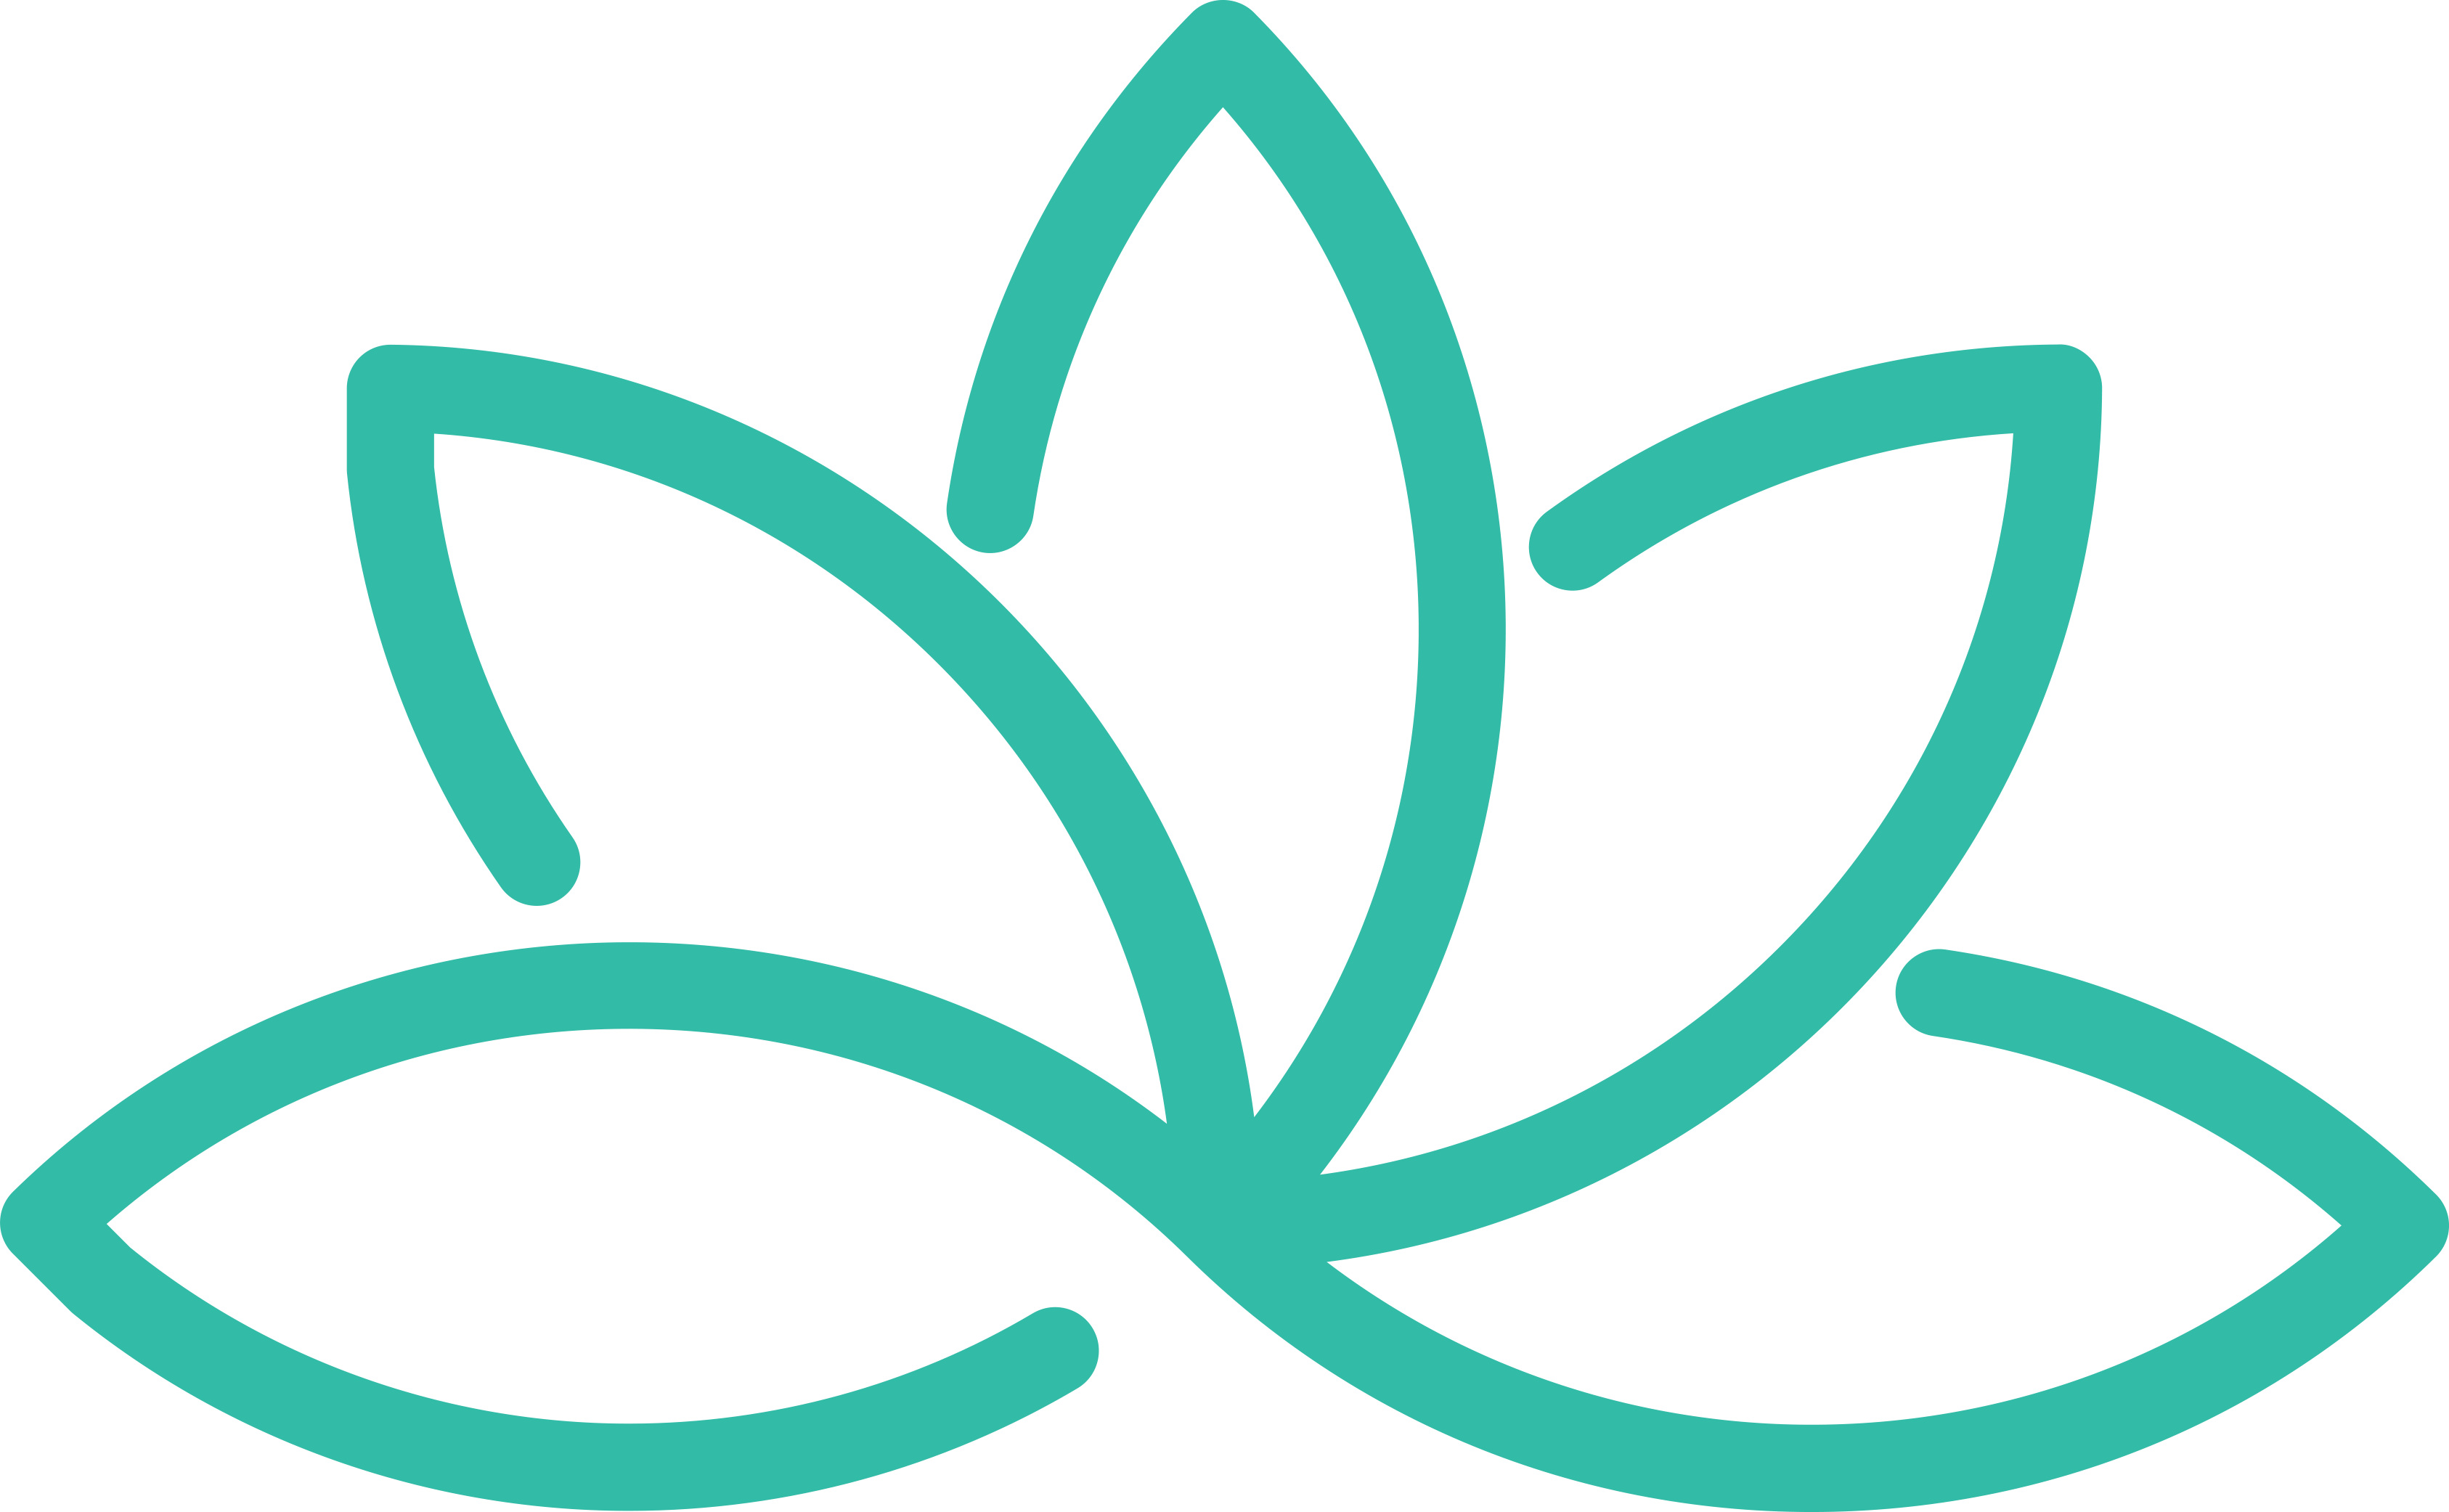 icone vert sur fond transparent représentant une fleur de lotus